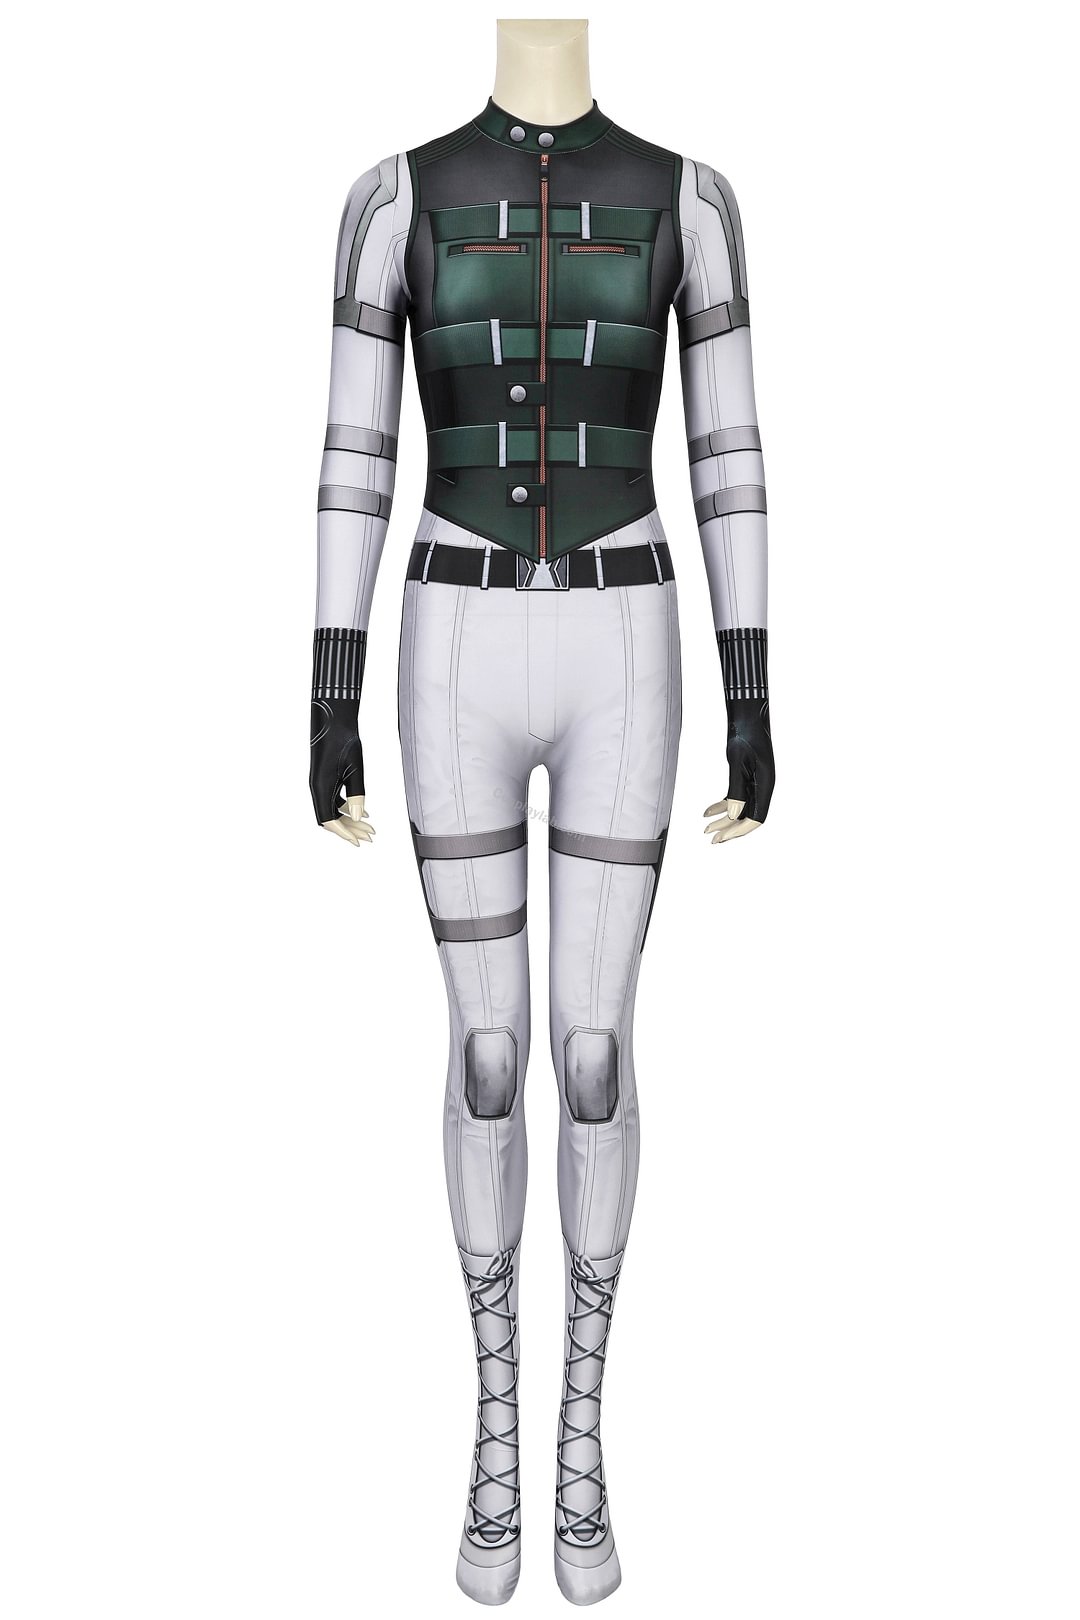 Black Widow 2020 Yelena Belova Spandex 3D Printed Cosplay Suit Jumpsuit By CosplayLab